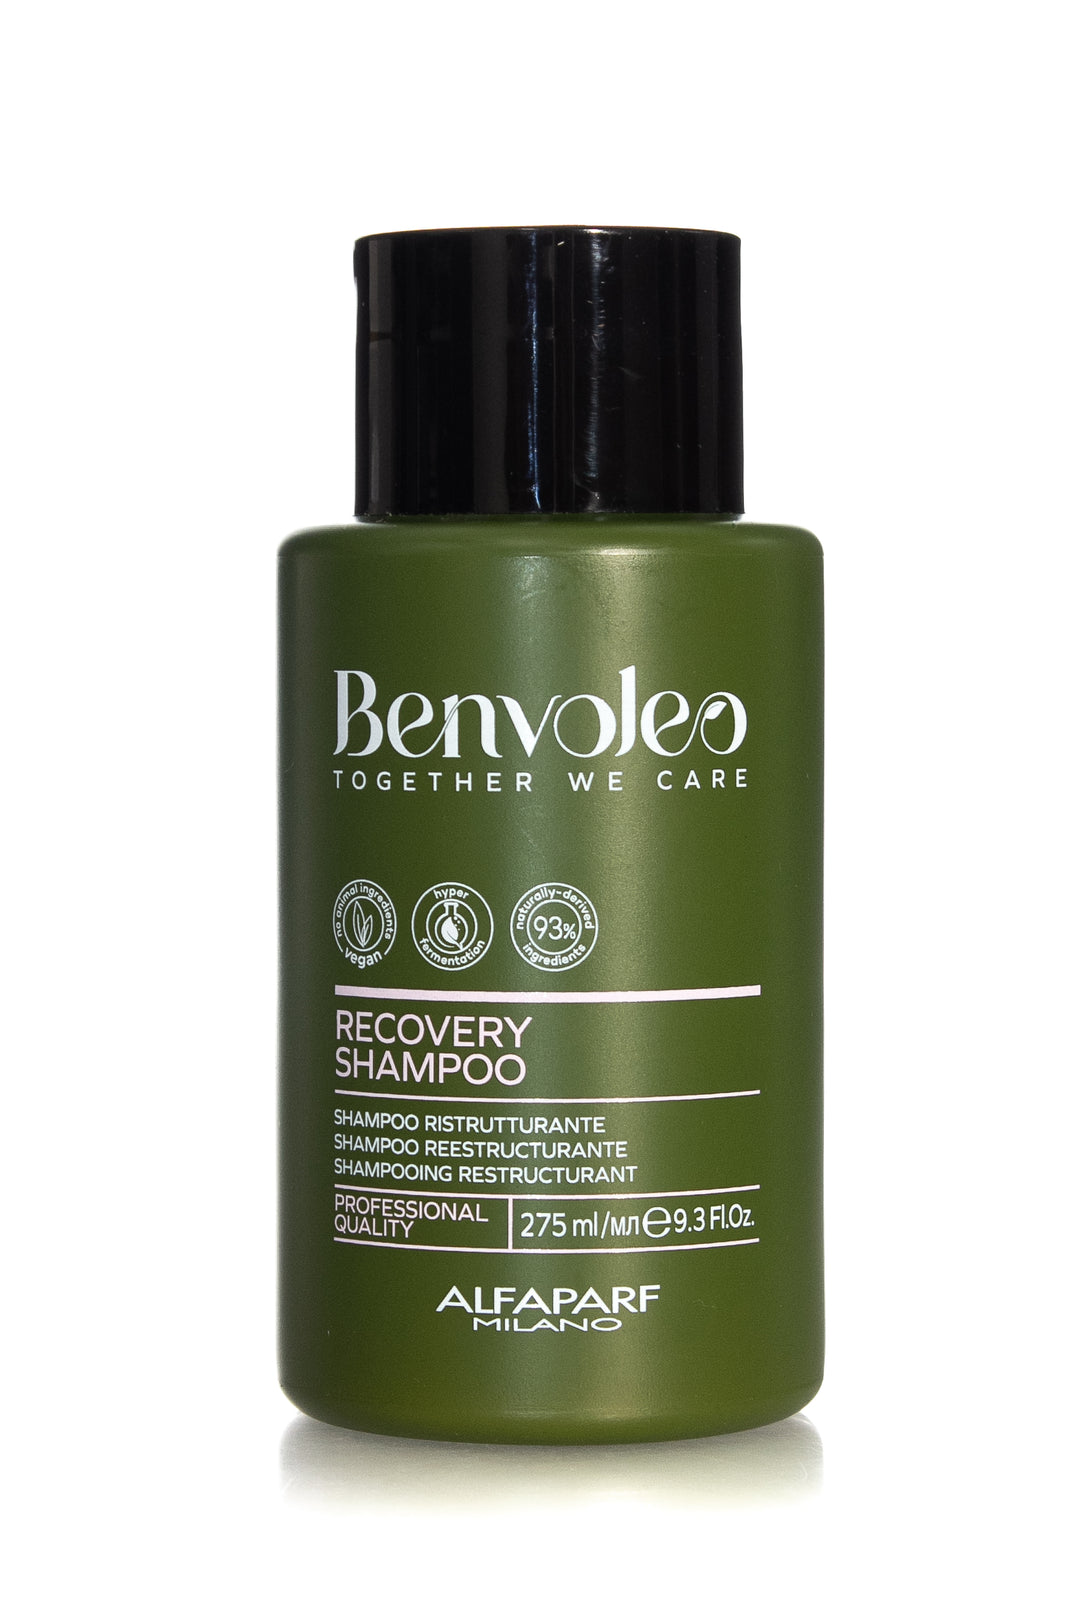 ALFAPARF MILANO Benvoleo Recovery Shampoo | 275ml